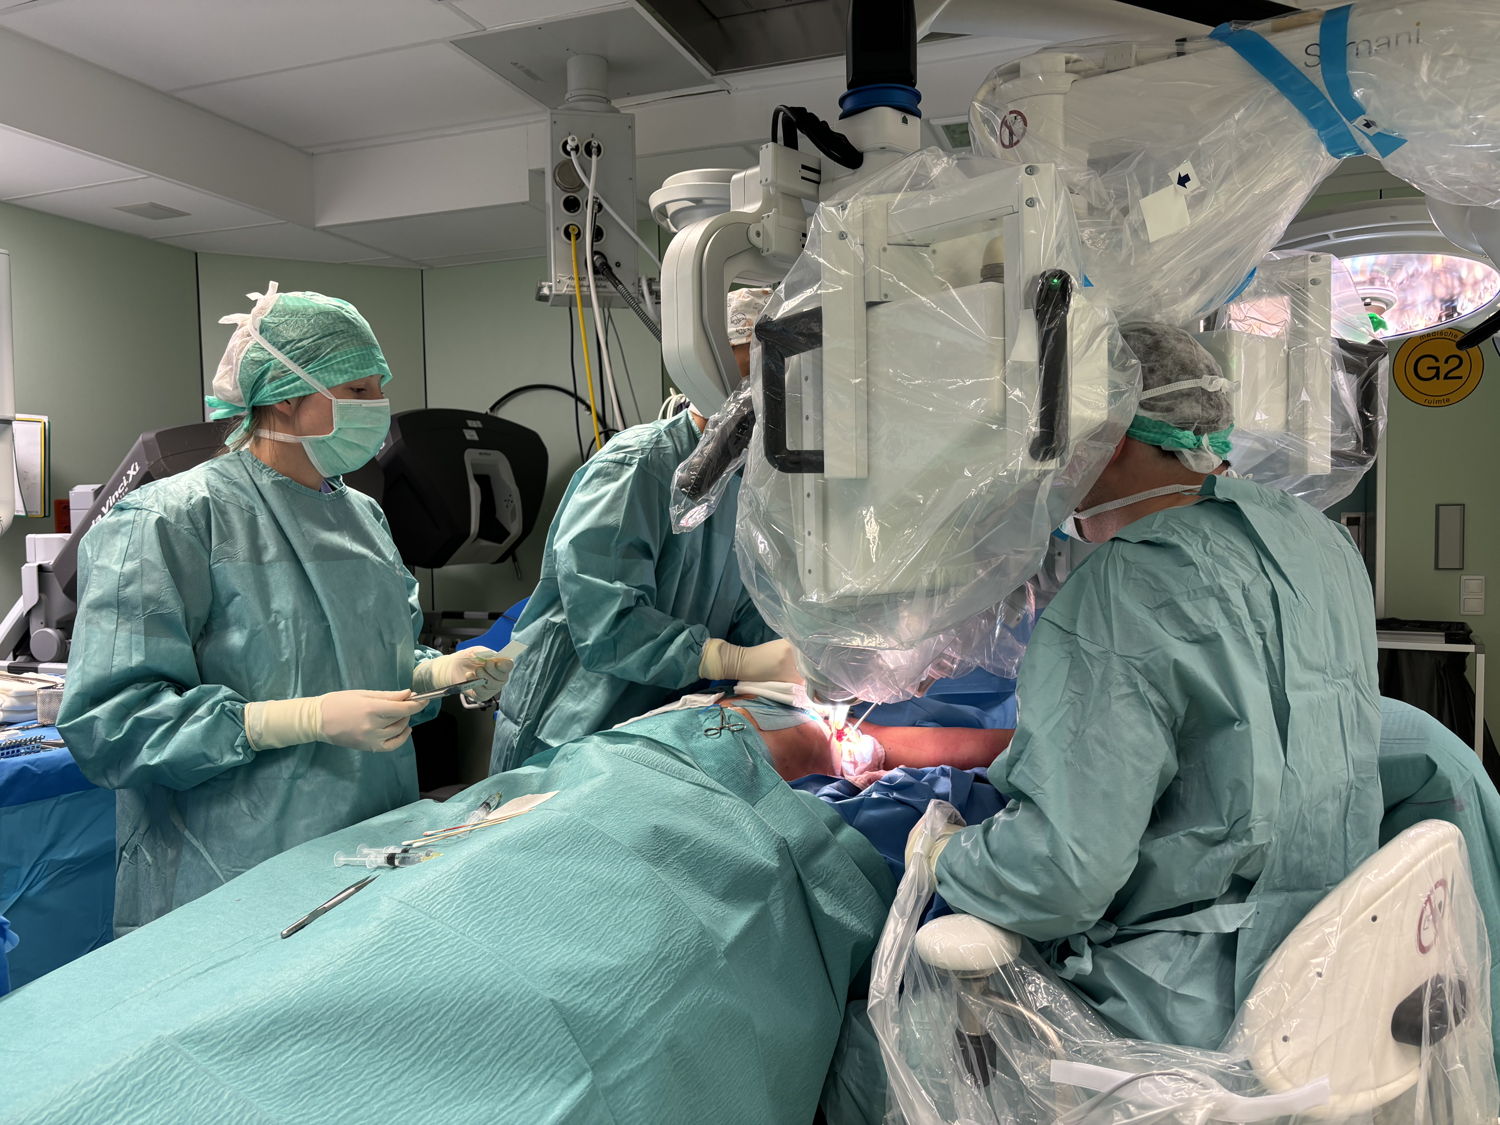 Prof. dr. Nistor bedient de Symani microchirurgierobot voor de transplantatie in de oksel.